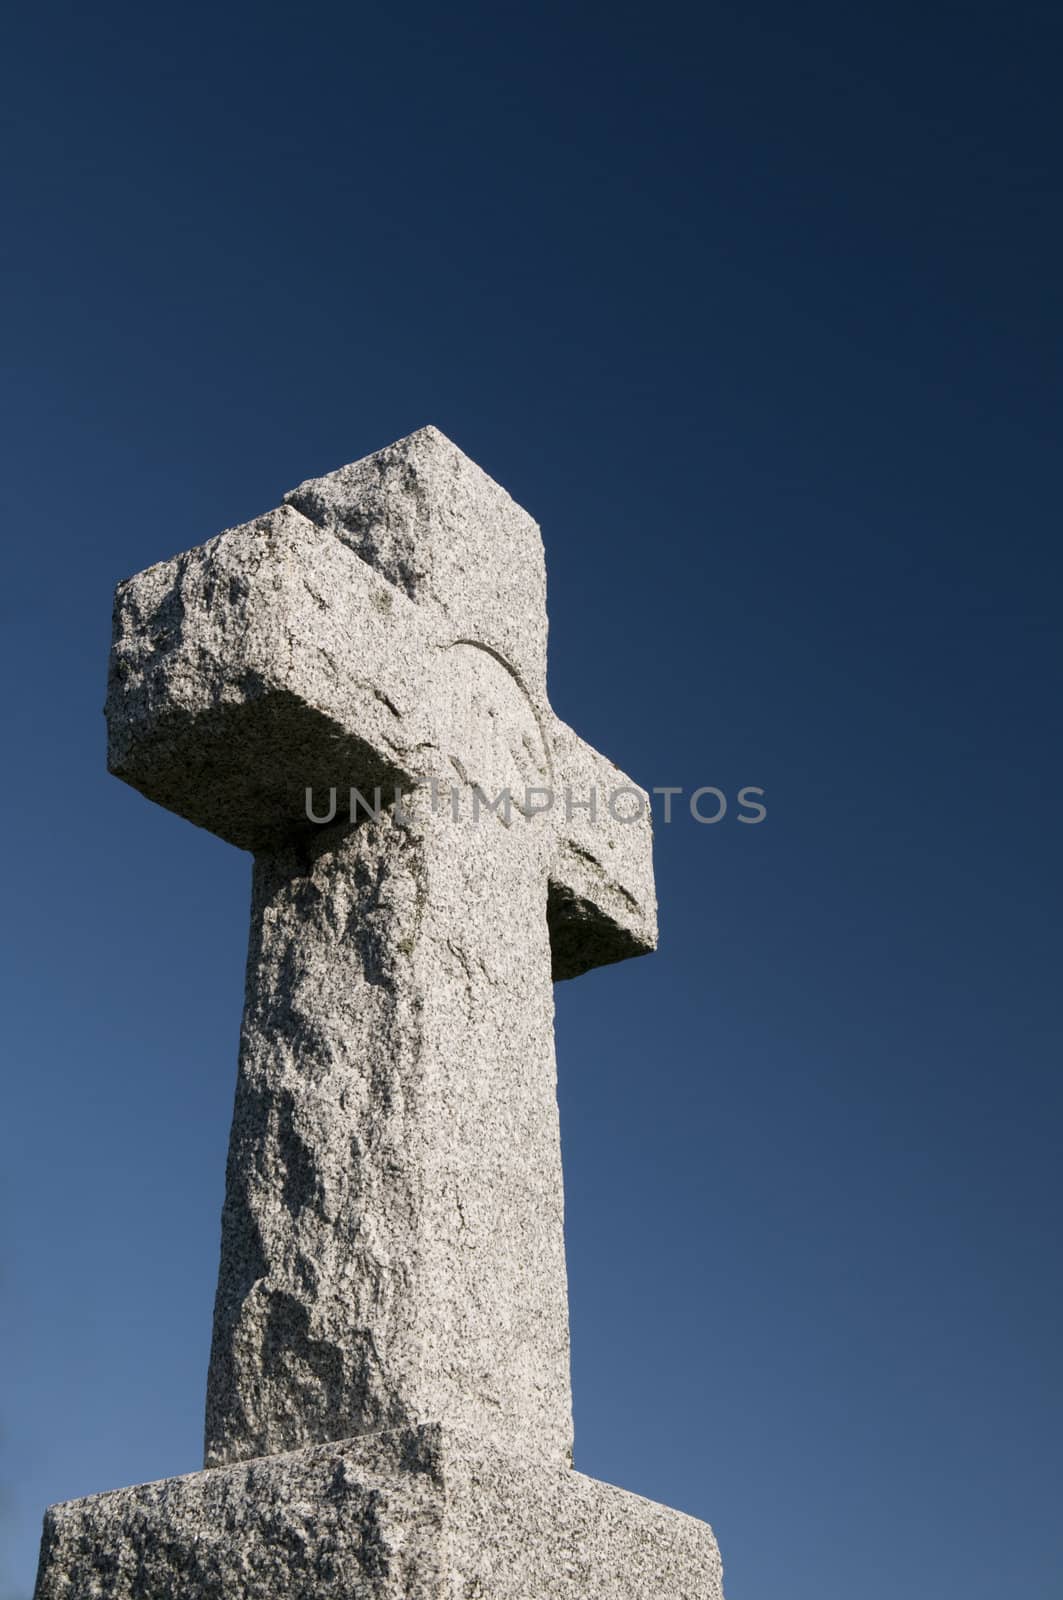 Wide angle image of a stone Christian cross on a deep blue sky